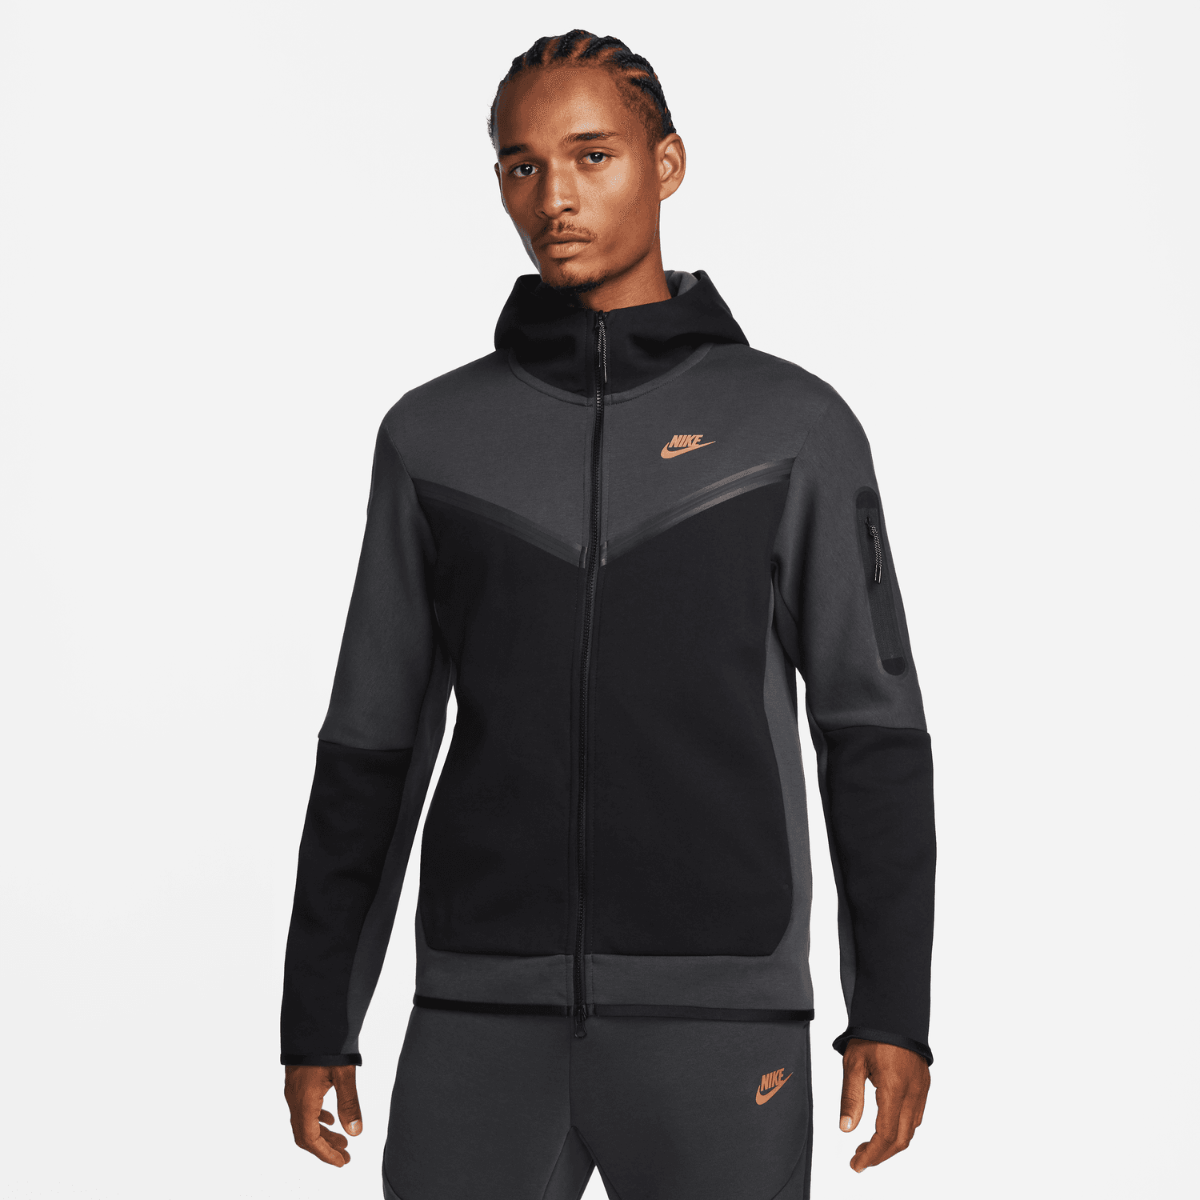 Sudadera con capucha Nike Tech Fleece - Negro/Gris/Dorado